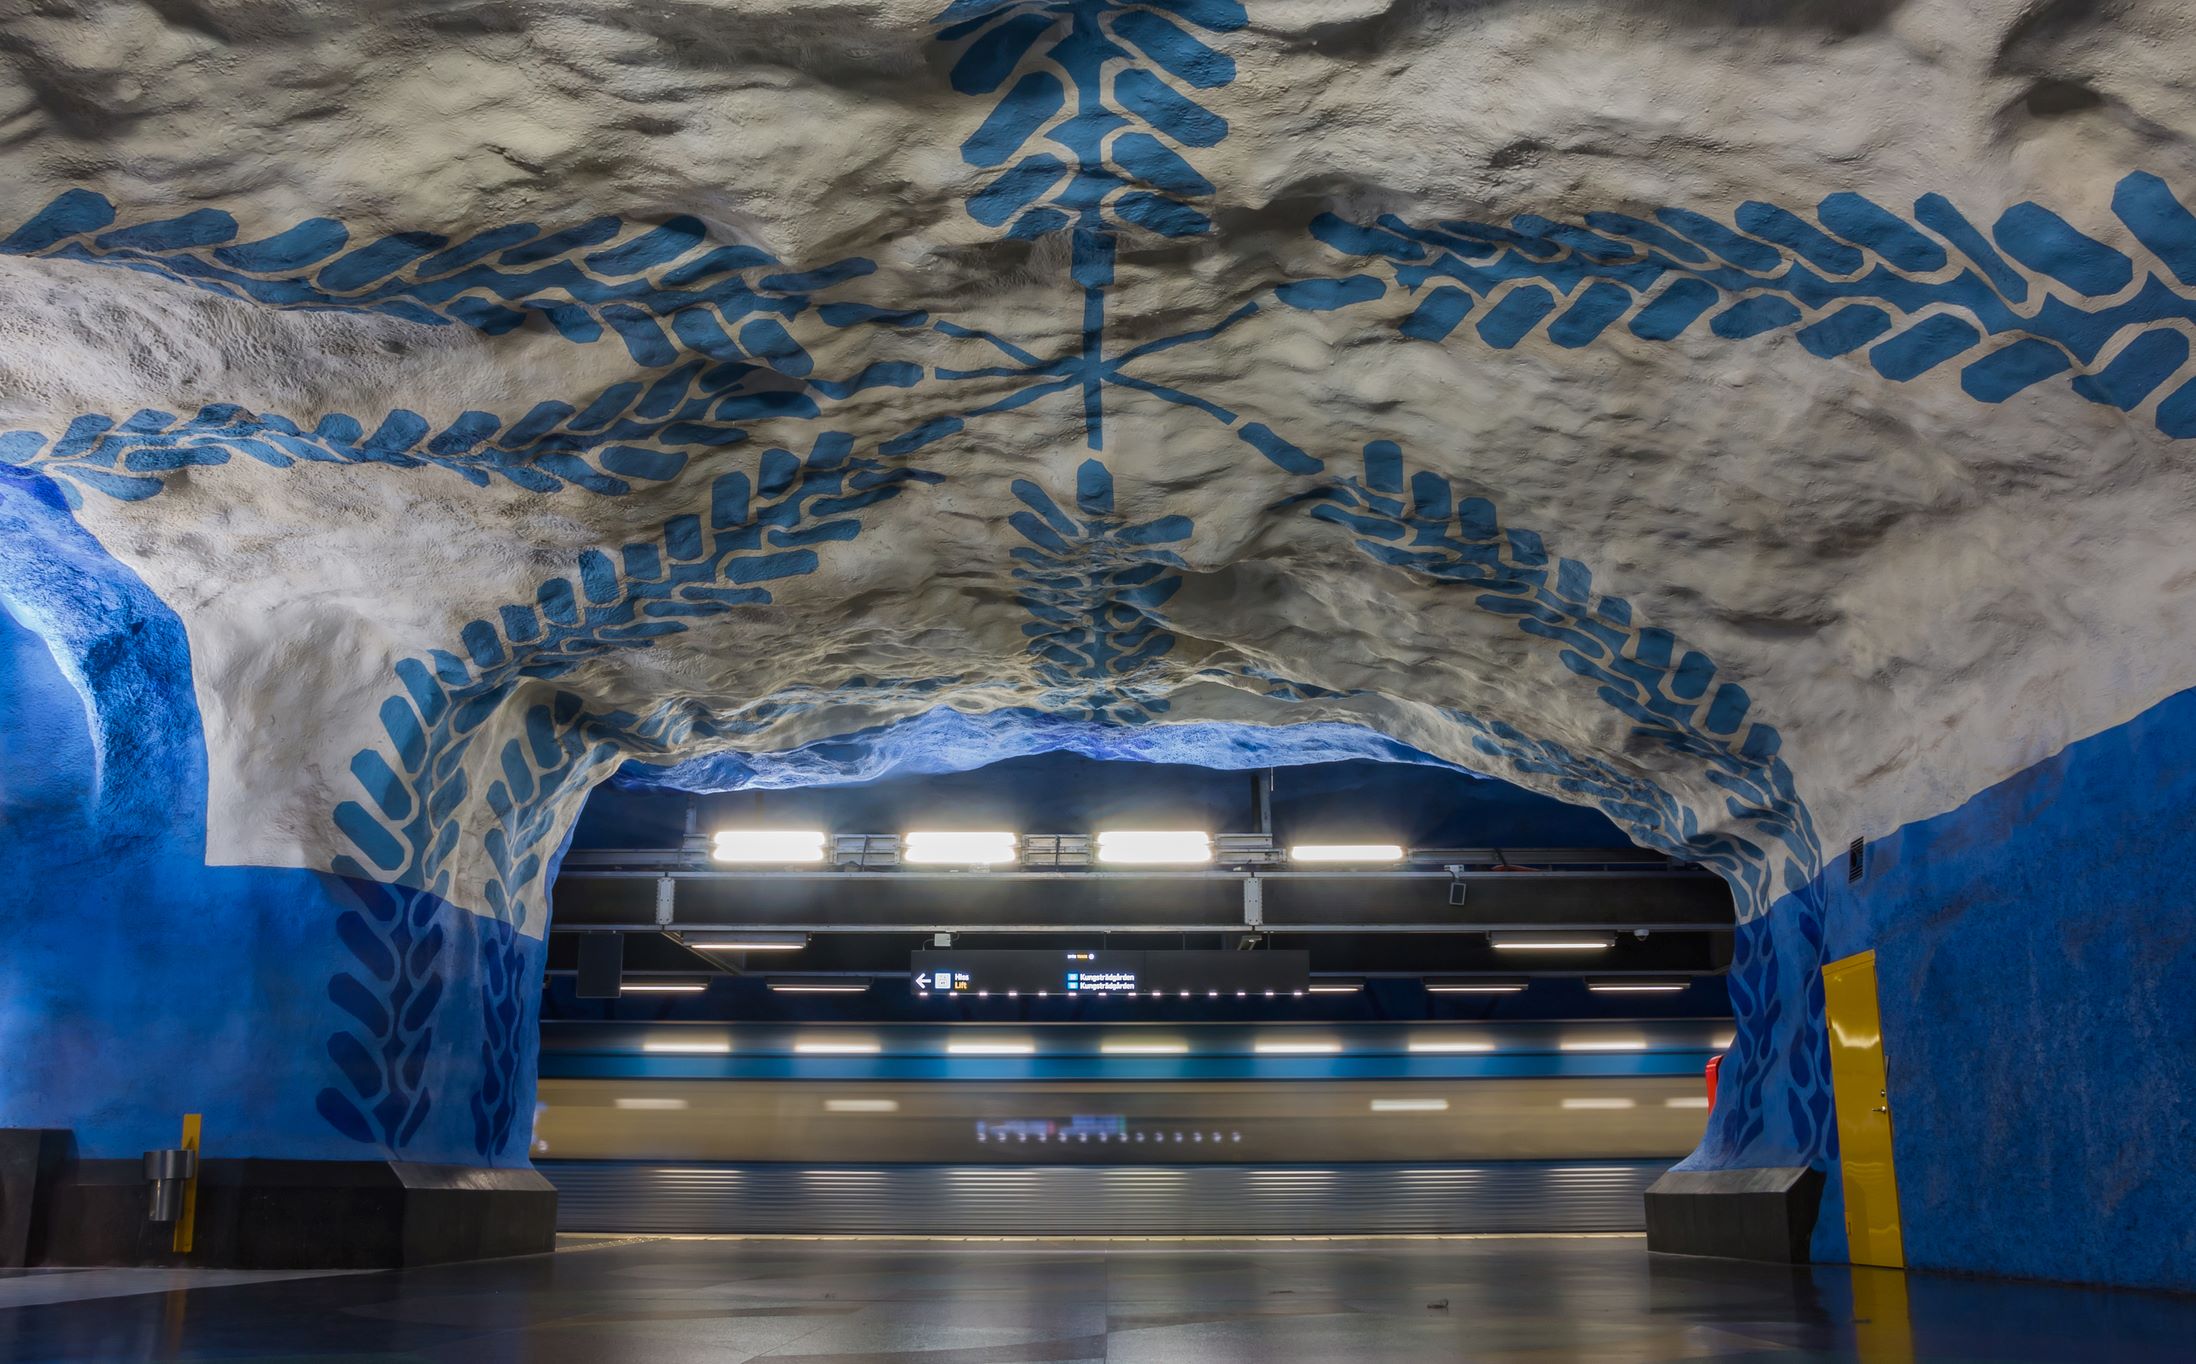 A T-centralen megálló Stockholmban